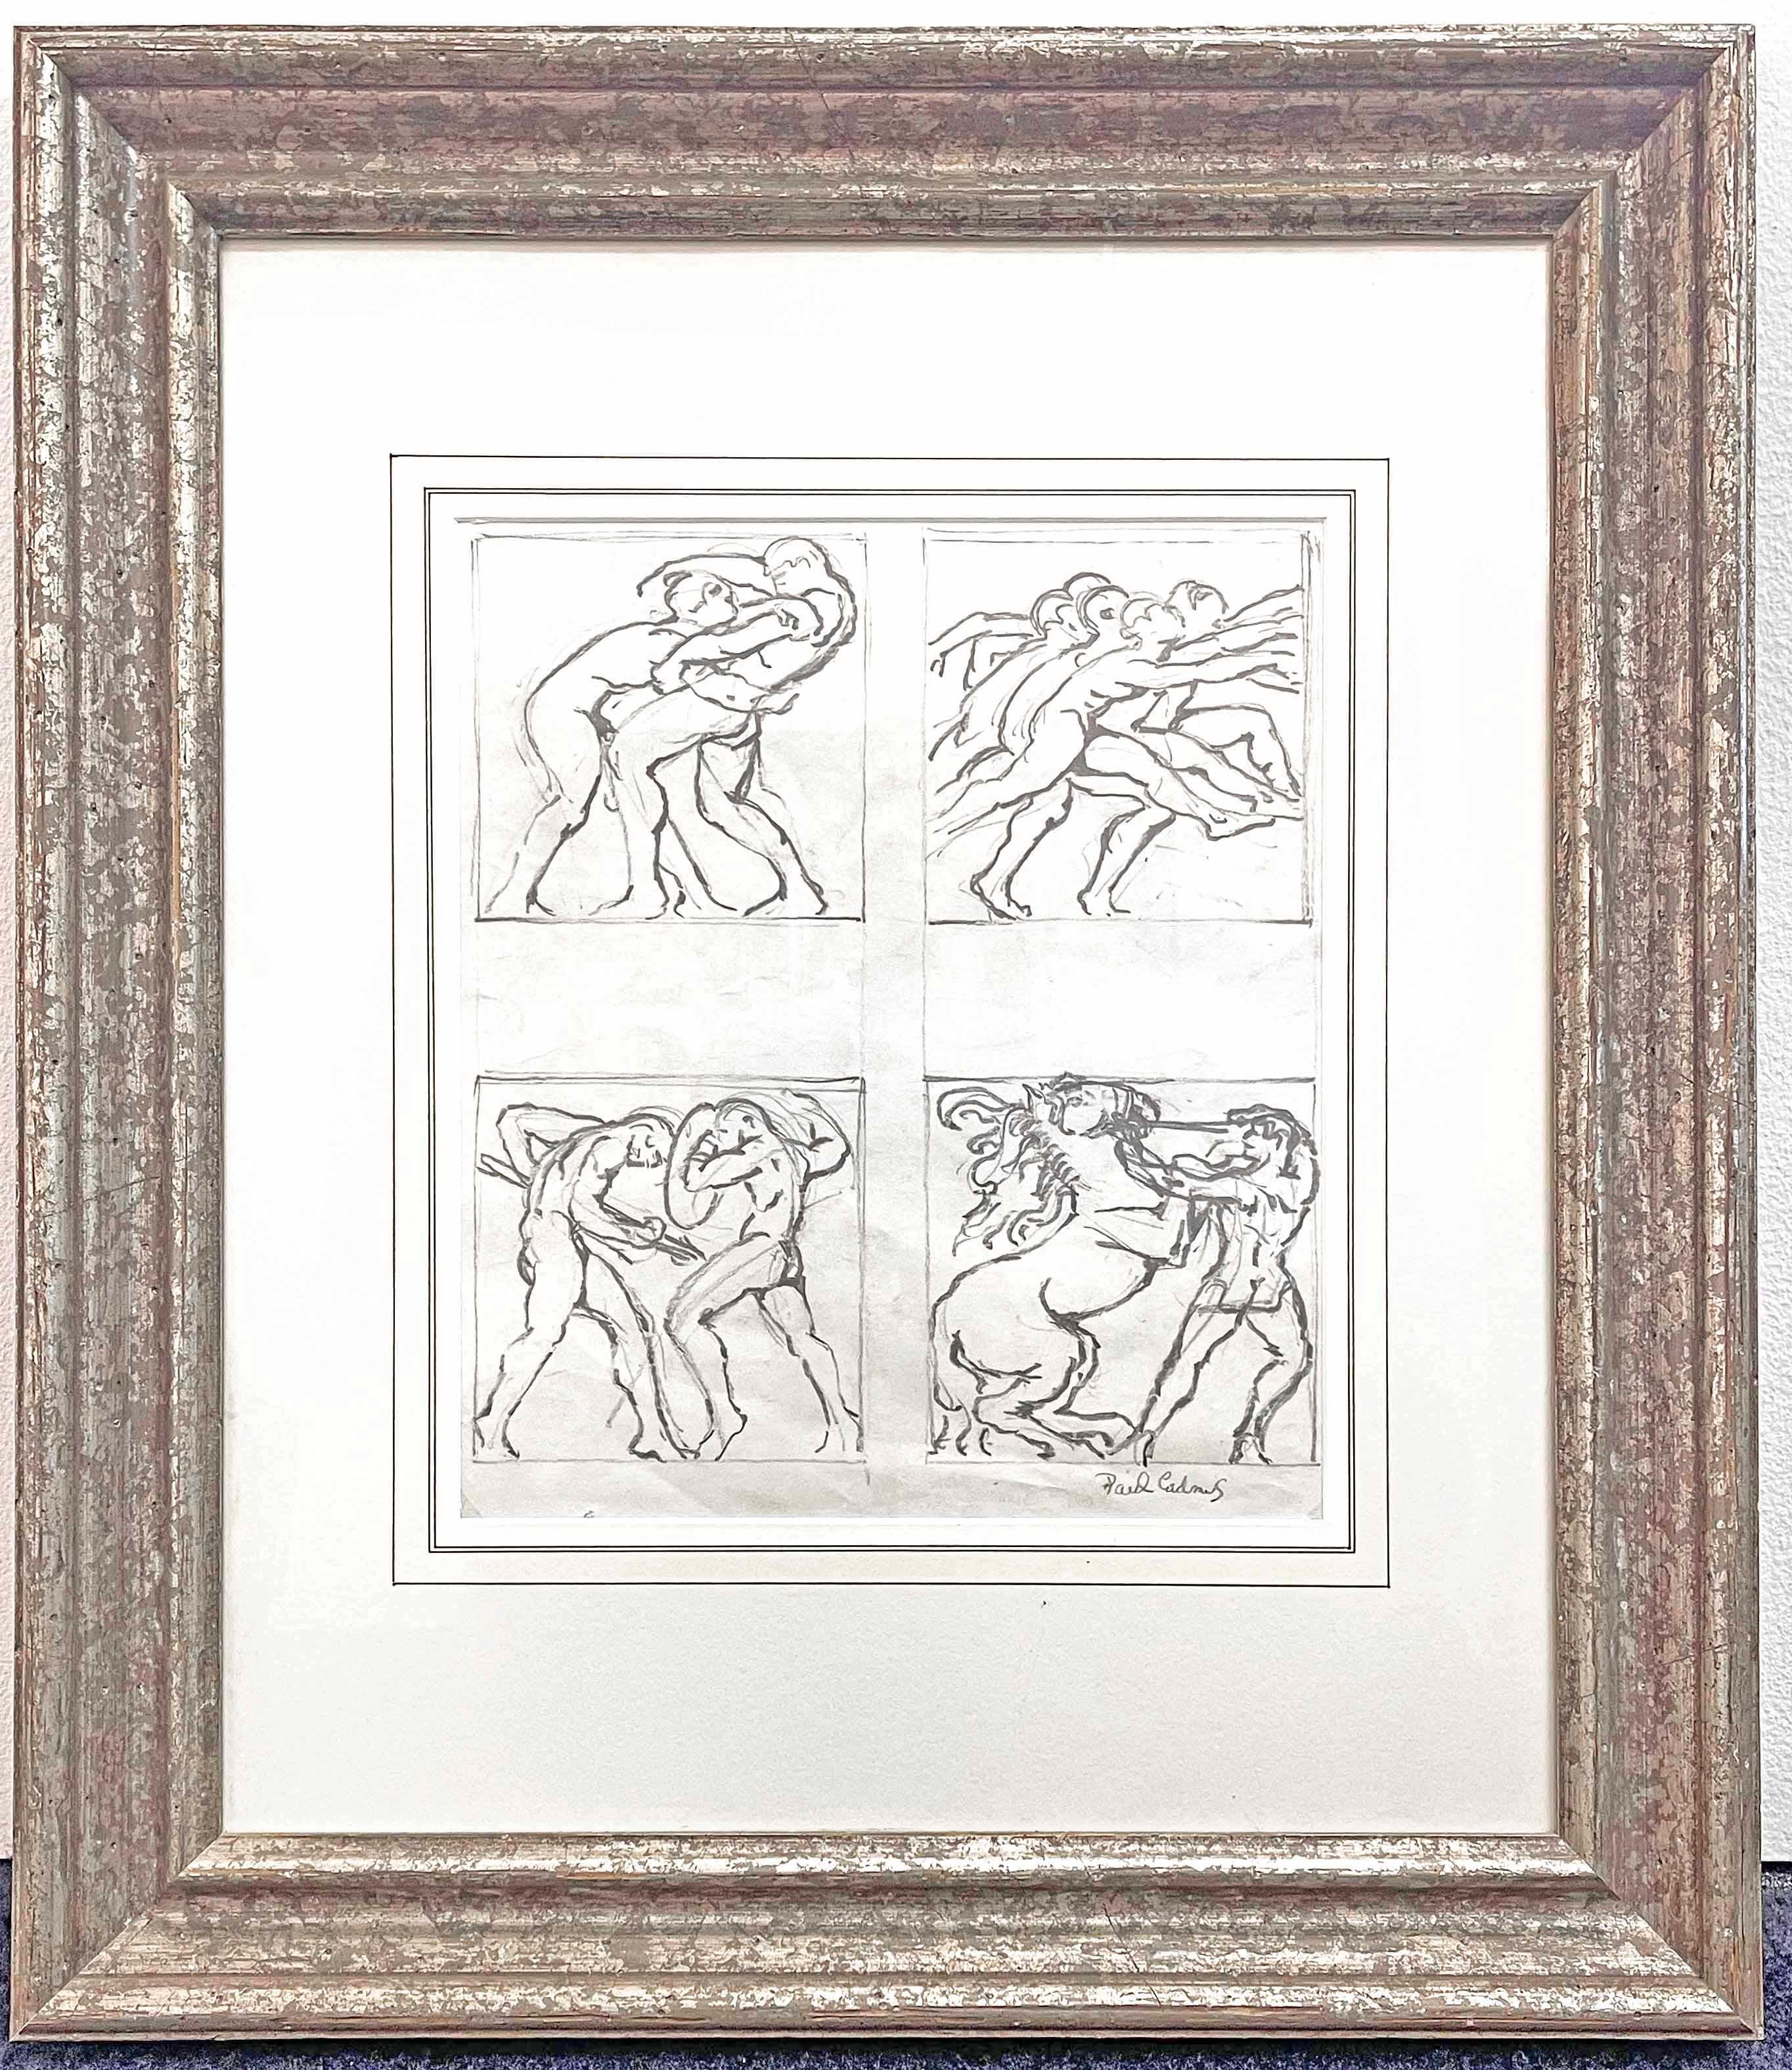 Diese vier Szenen stammen aus der Zeit, in der Paul Cadmus einige seiner berühmtesten - und berüchtigtsten - Gemälde mit satirischen Themen wie 